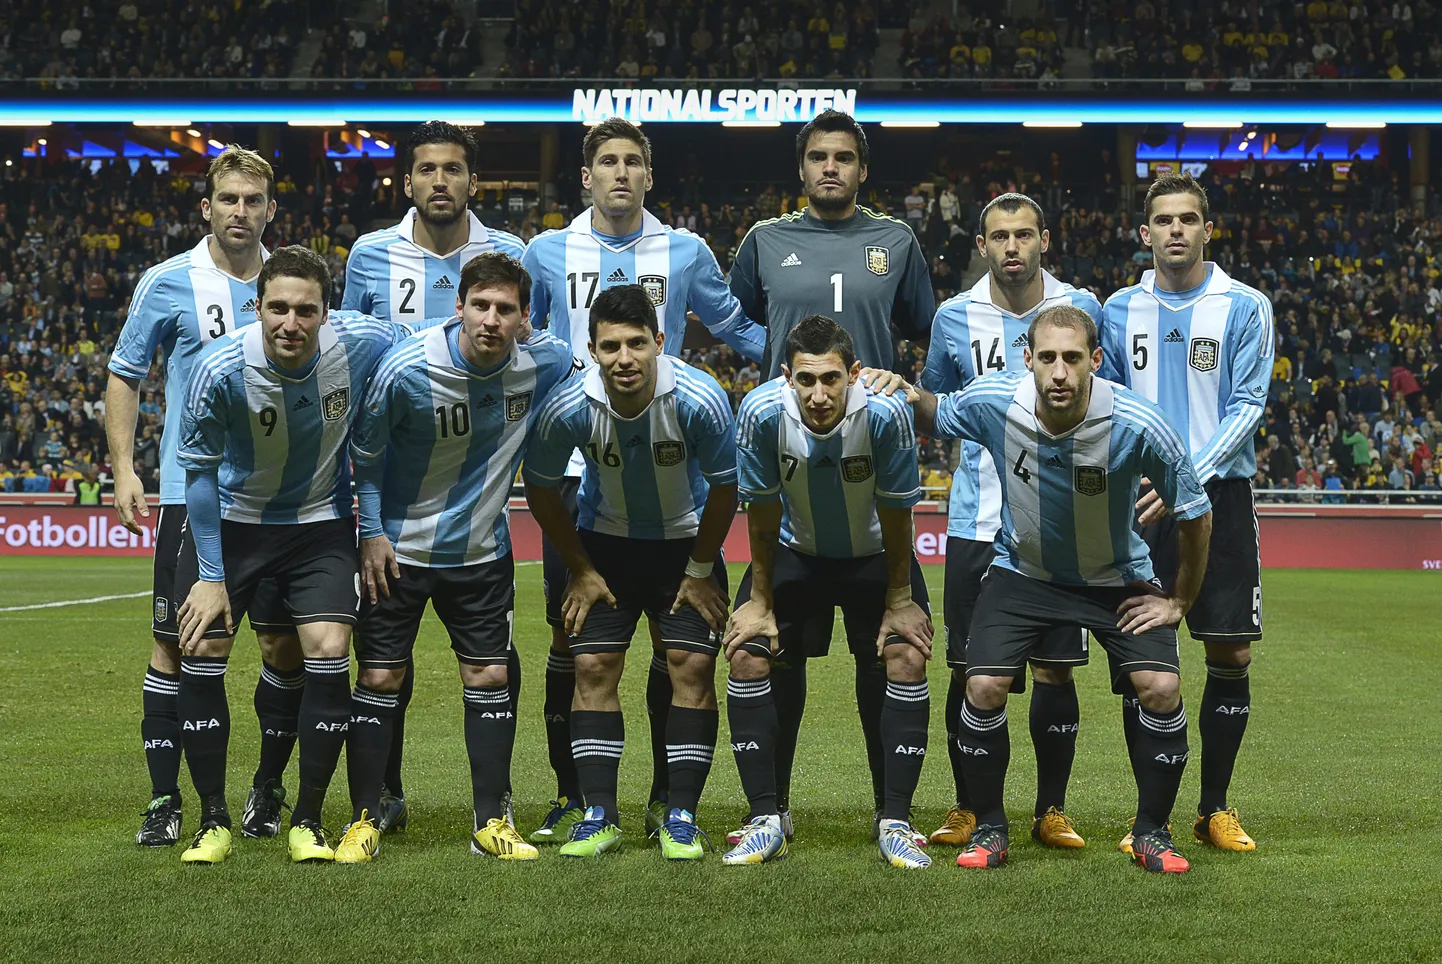 Argentina jalgpallikoondis.